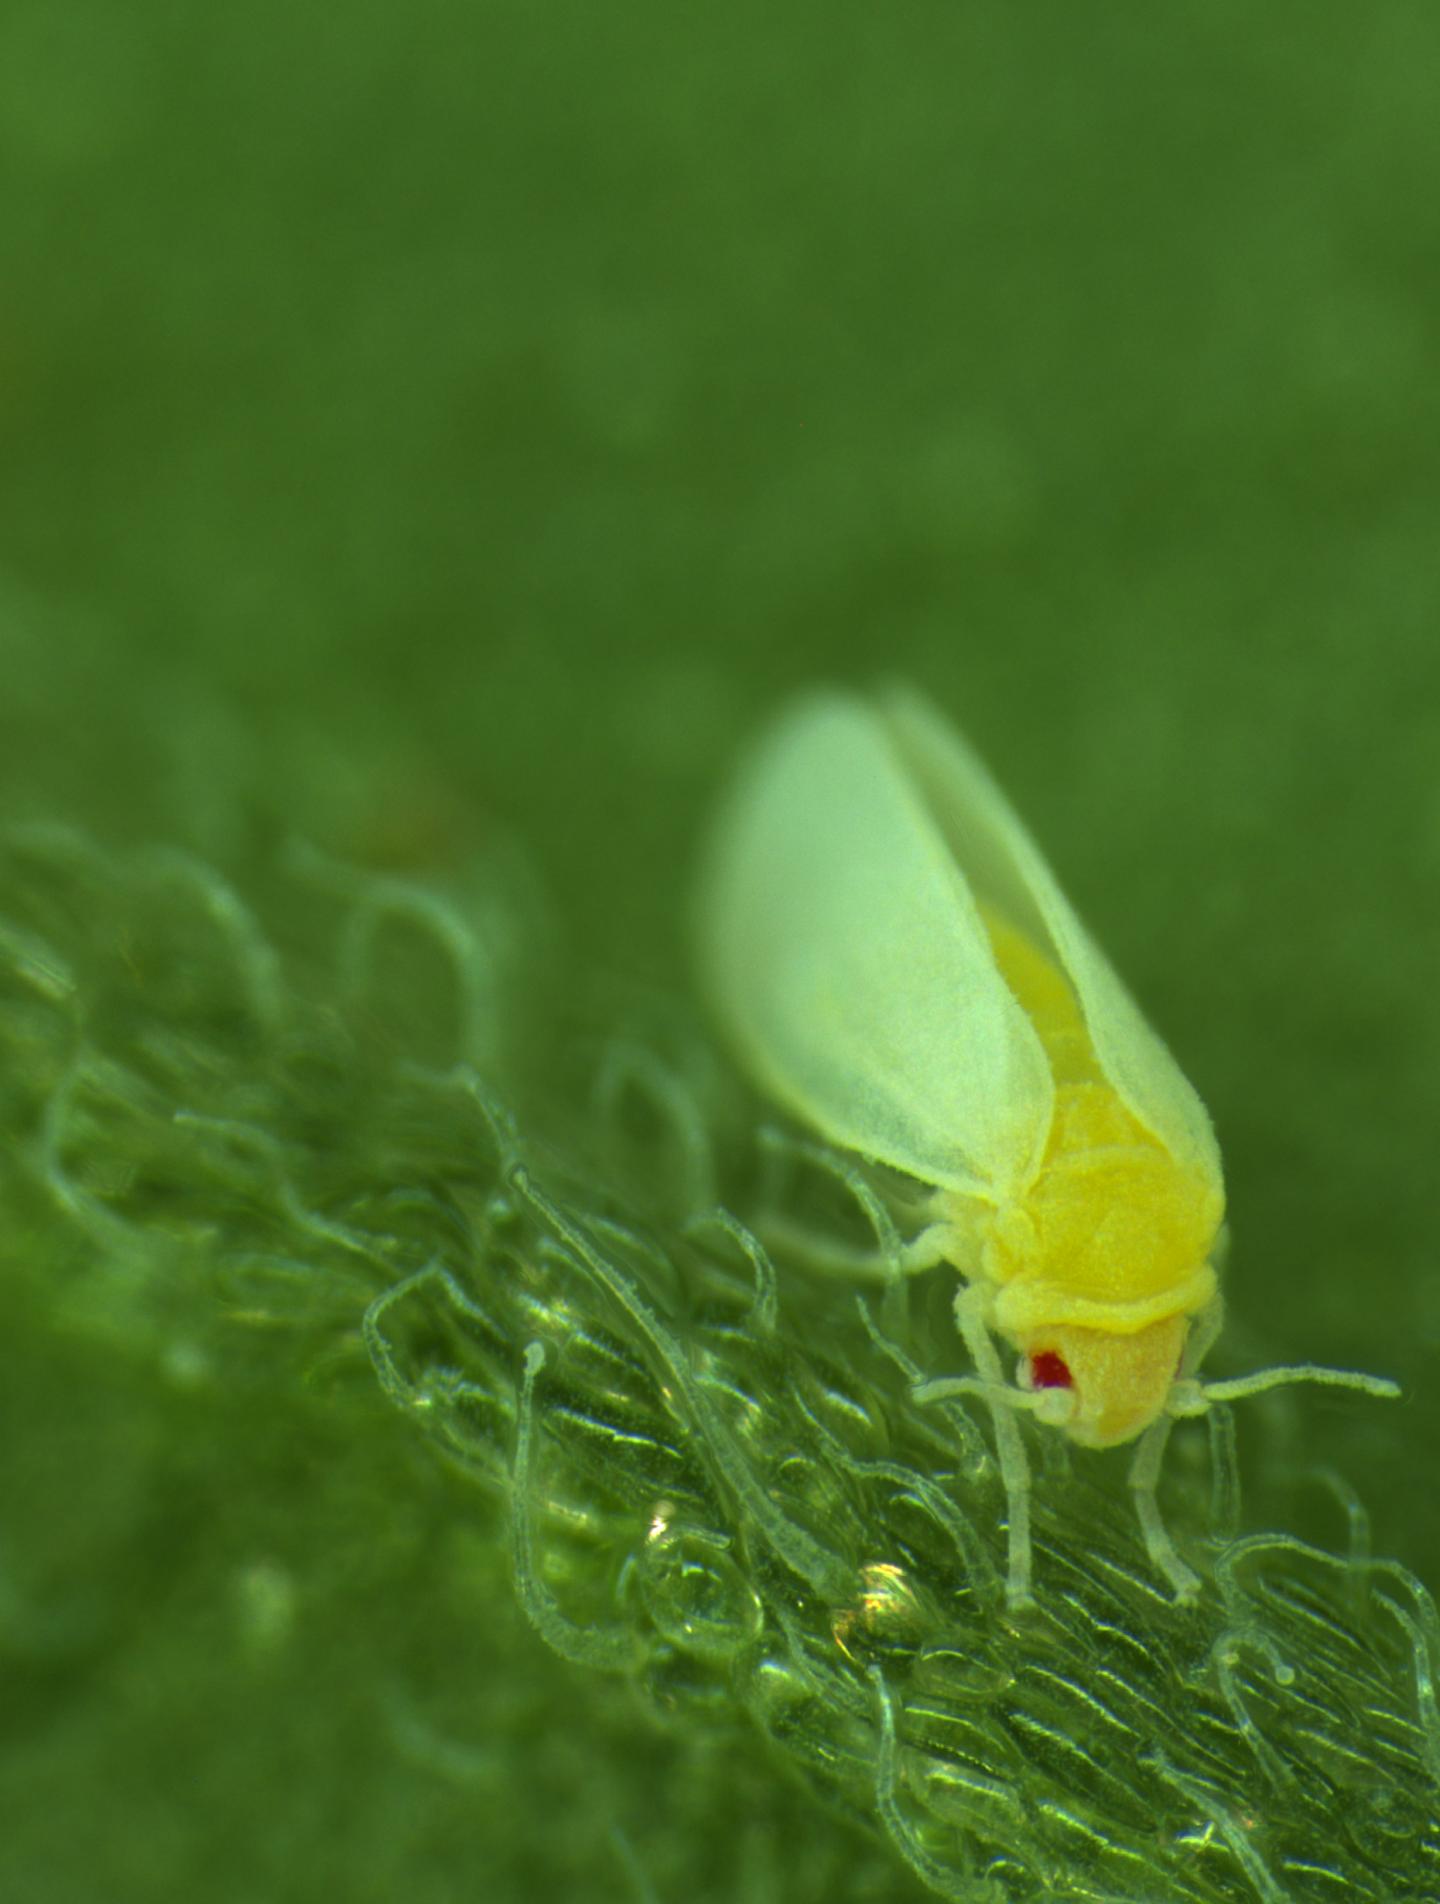 whitefly on leaf